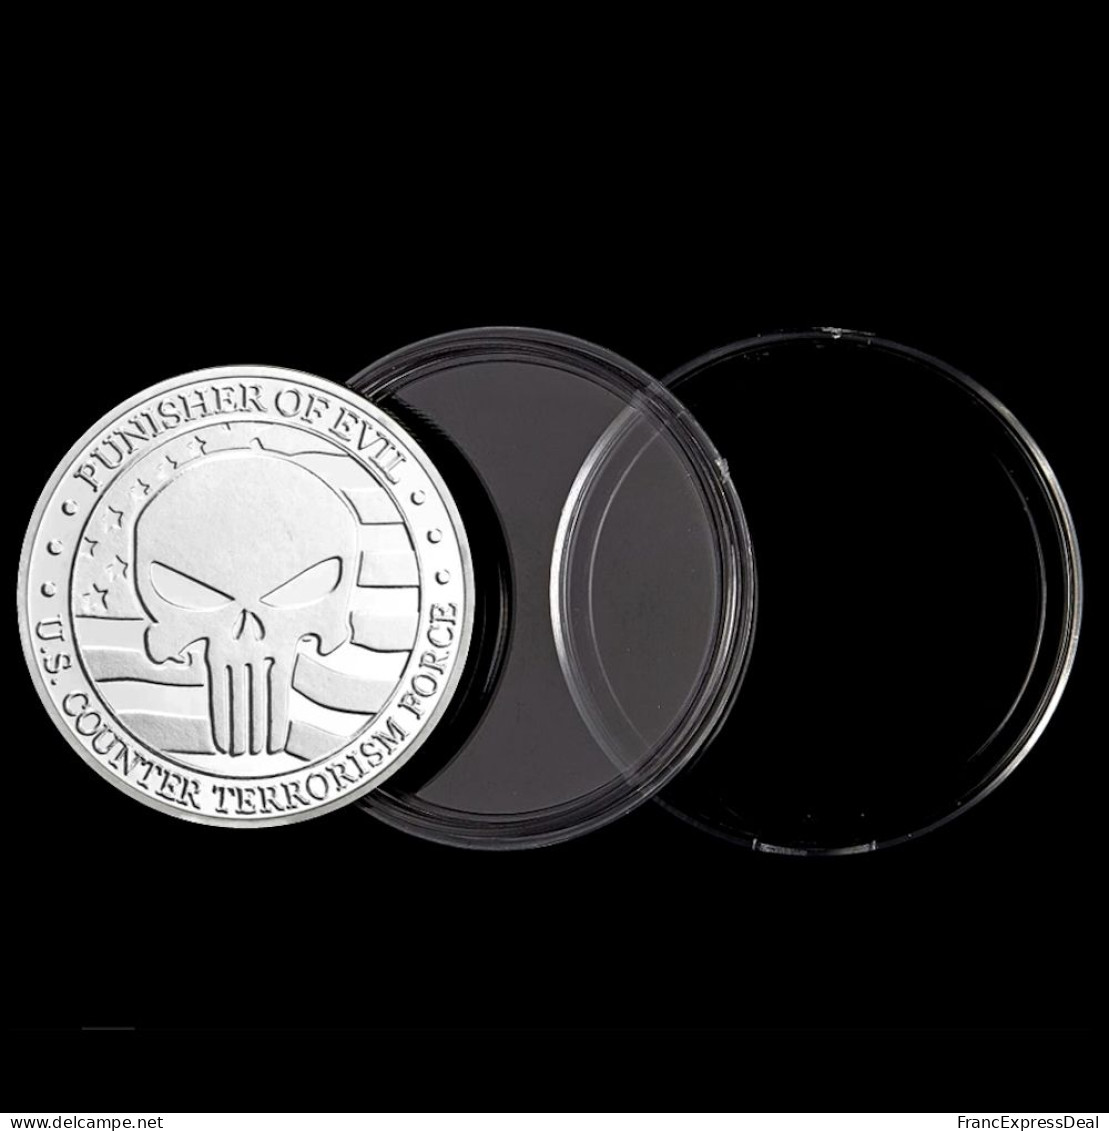 Pièce Médaille NEUVE plaquée Argent - Punisher of Evil US Counter Terrorism Force